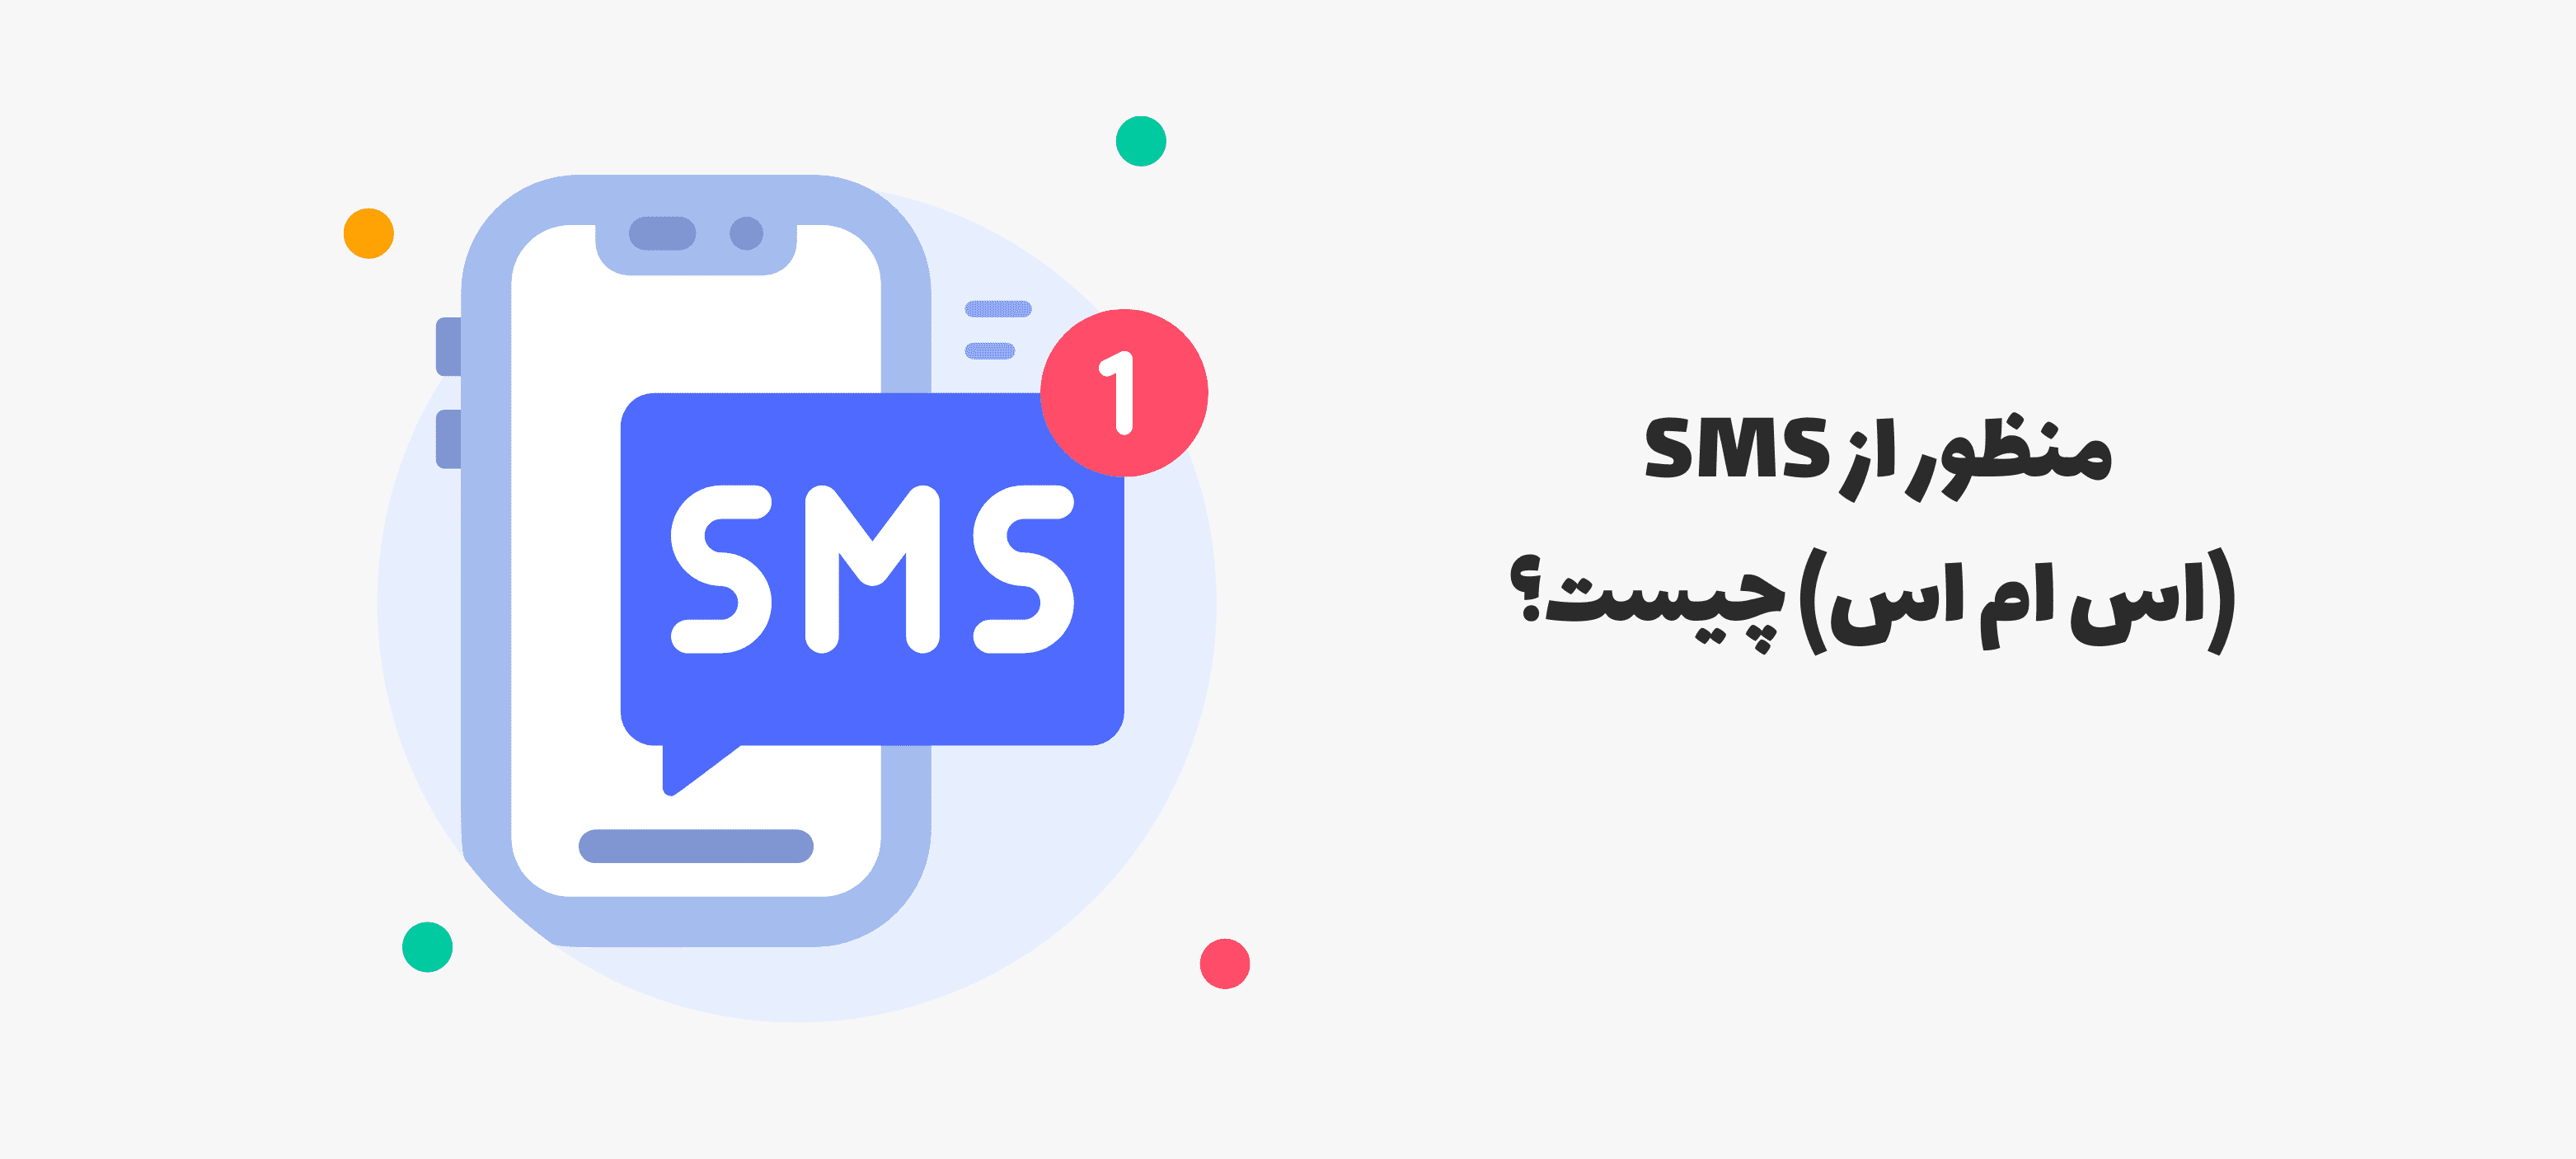 منظور از SMS (اس ام اس) چیست؟